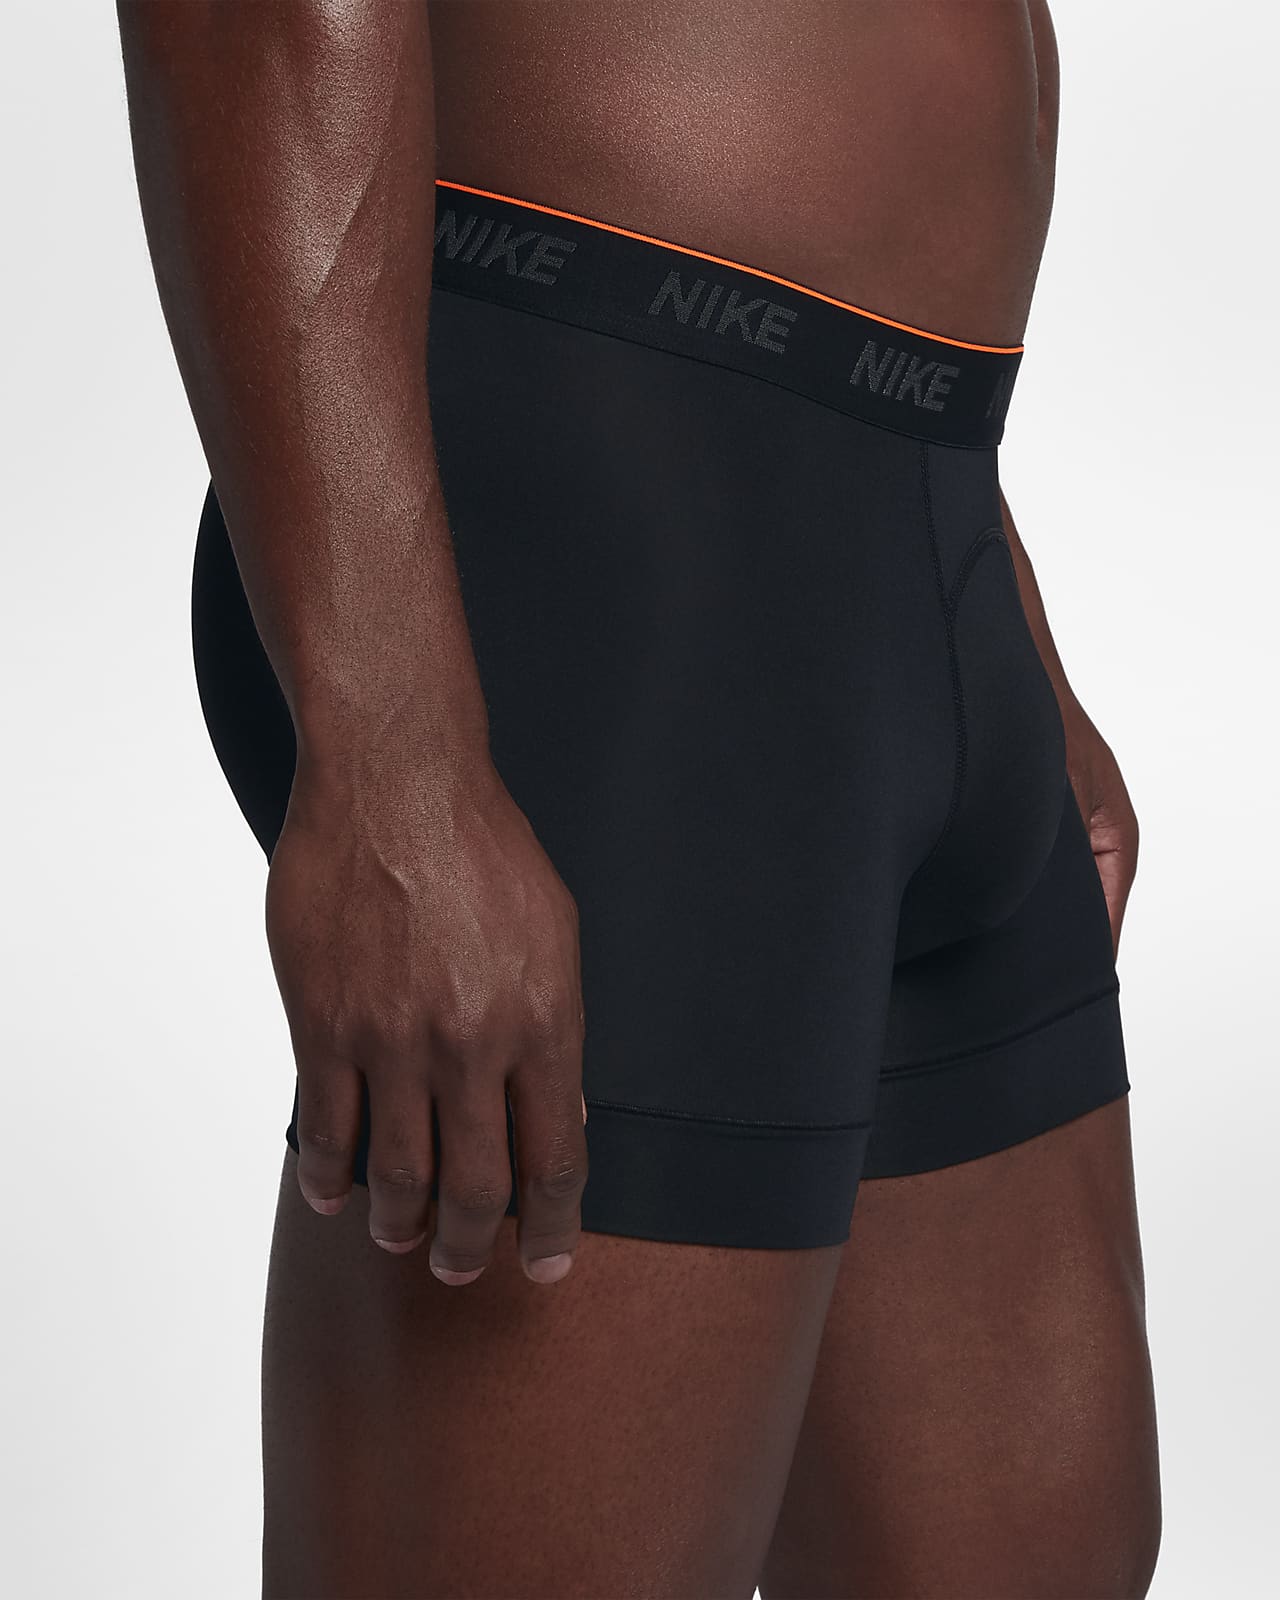 Nike Men's Underwear (2